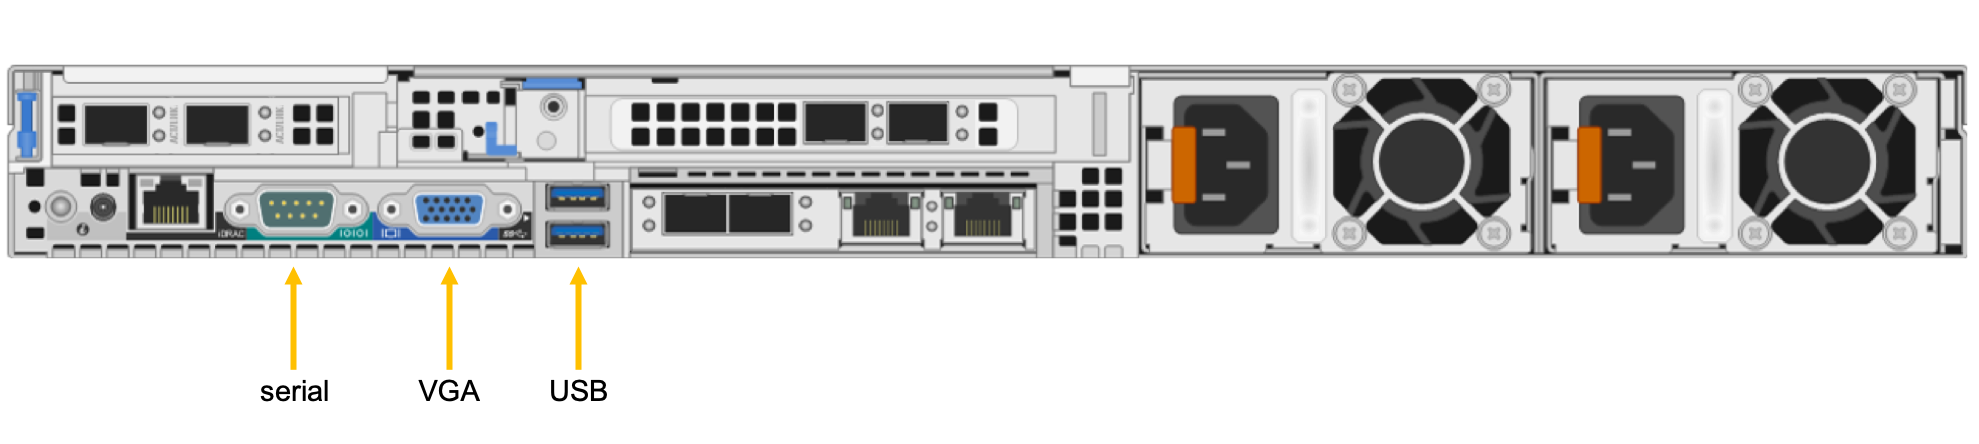 シリアル ポート、VGA ポート、USB ポートを示す Azure FXT Edge Filer の背面図